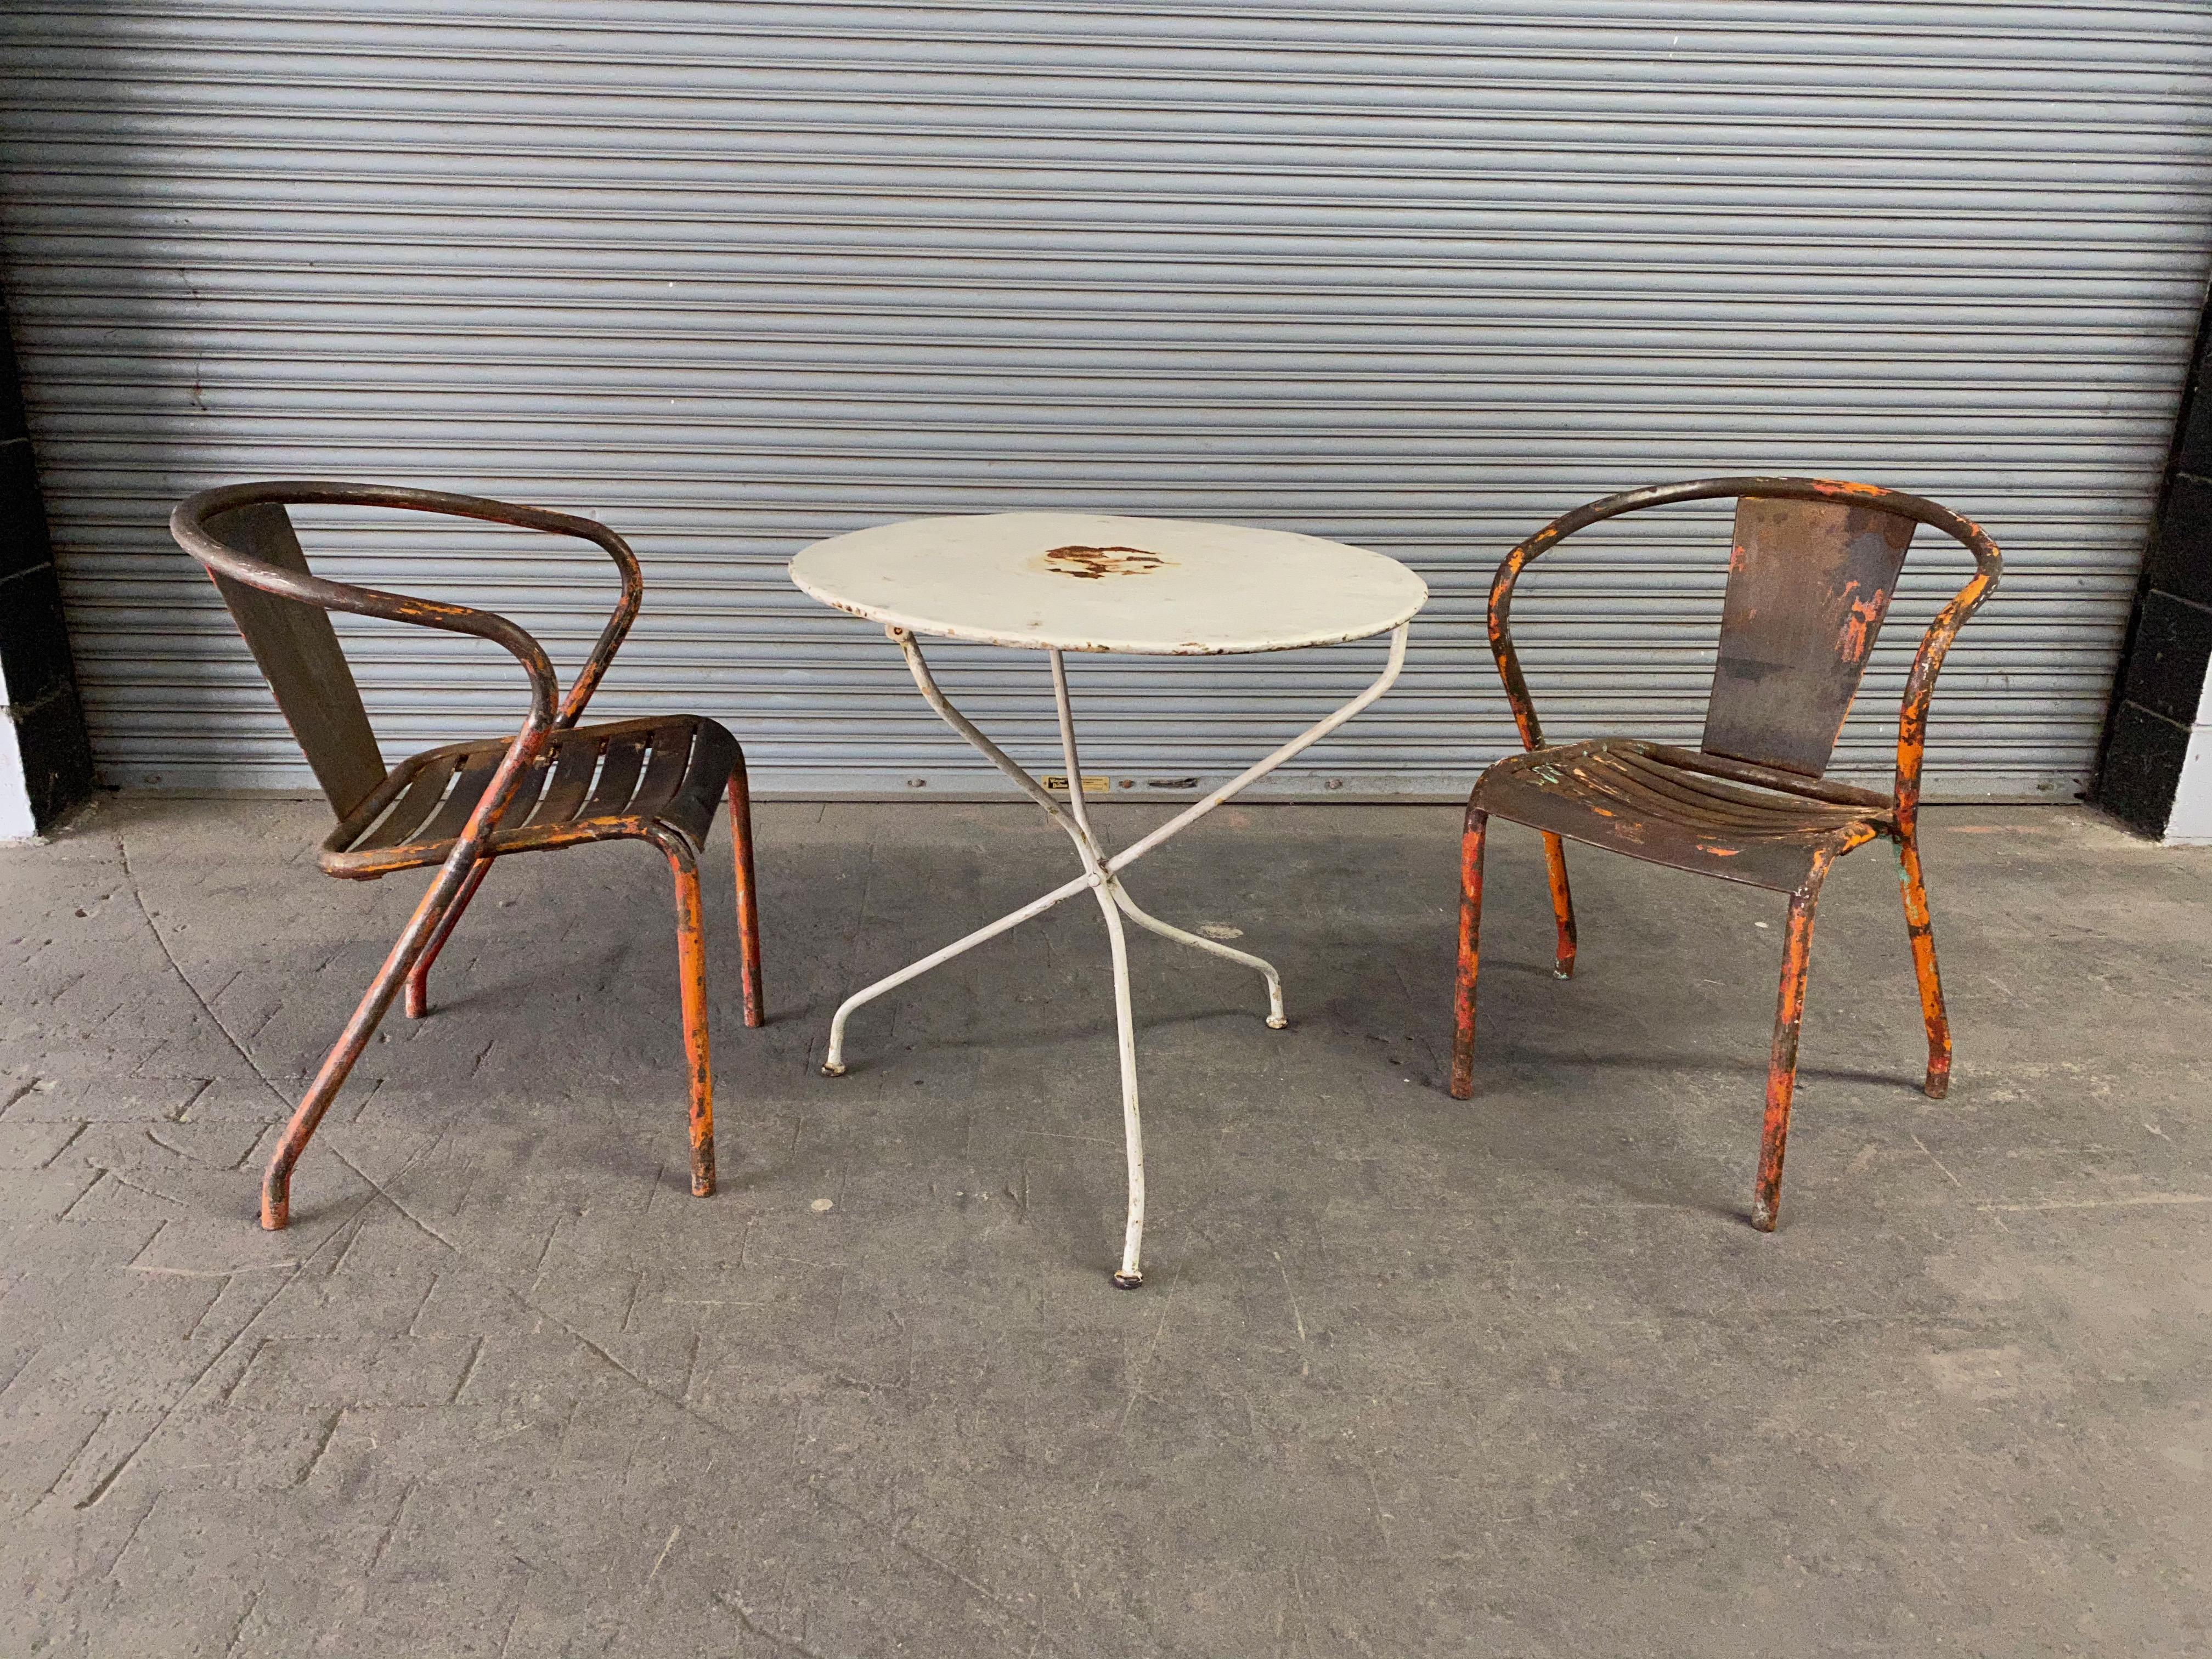 Ein außergewöhnliches Paar französischer Tolix-Sessel aus Metall der 1920er Jahre mit abgenutzter und beschädigter orangefarbener Farbe. Diese charmanten Stühle sind typisch für die Garten- und Bistromöbel in Südfrankreich. Sie vereinen den